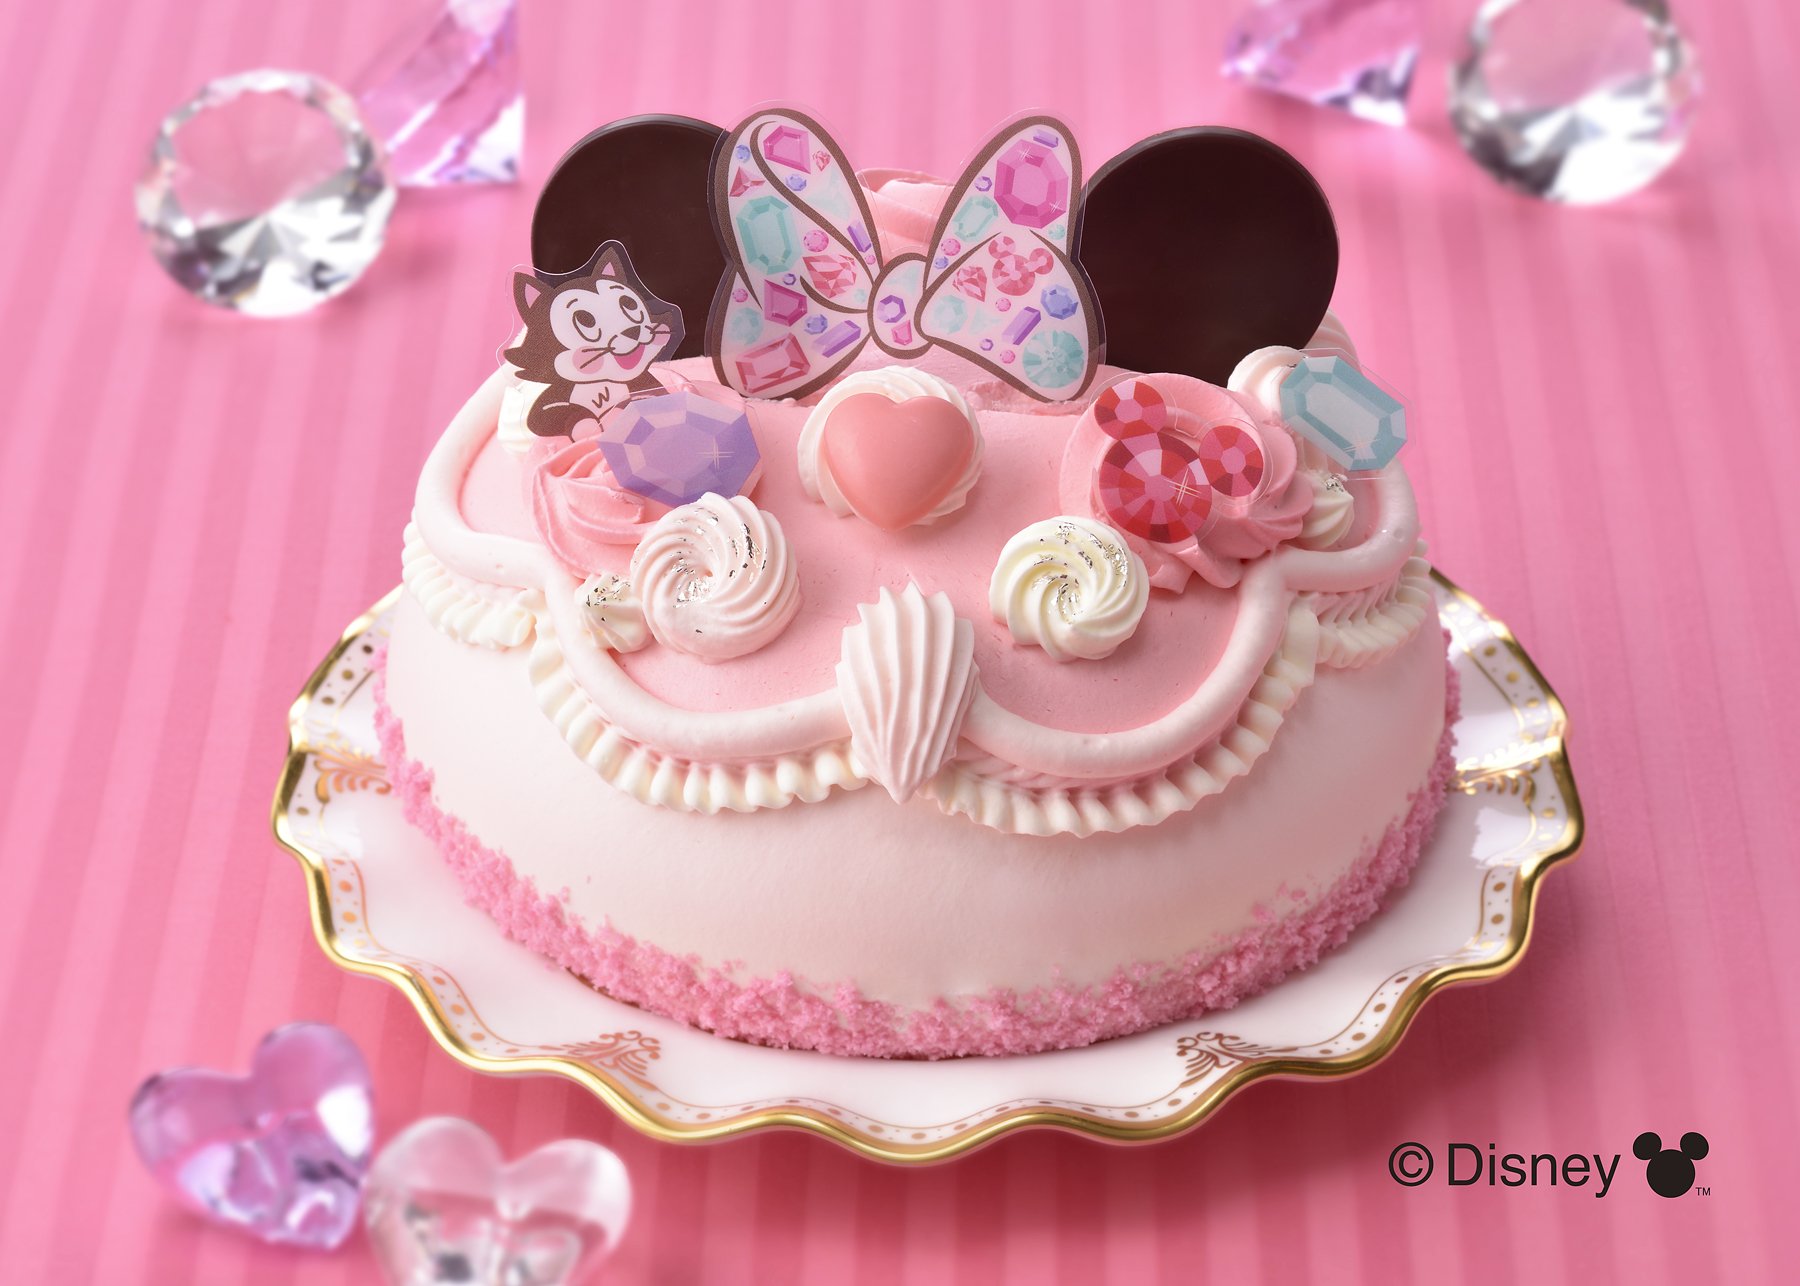 銀座コージーコーナー 3月2日は ミニーの日 ミニーマウスをデザインしたデコレーションケーキでhappyな１日 にしよう 株式会社銀座コージーコーナーのプレスリリース